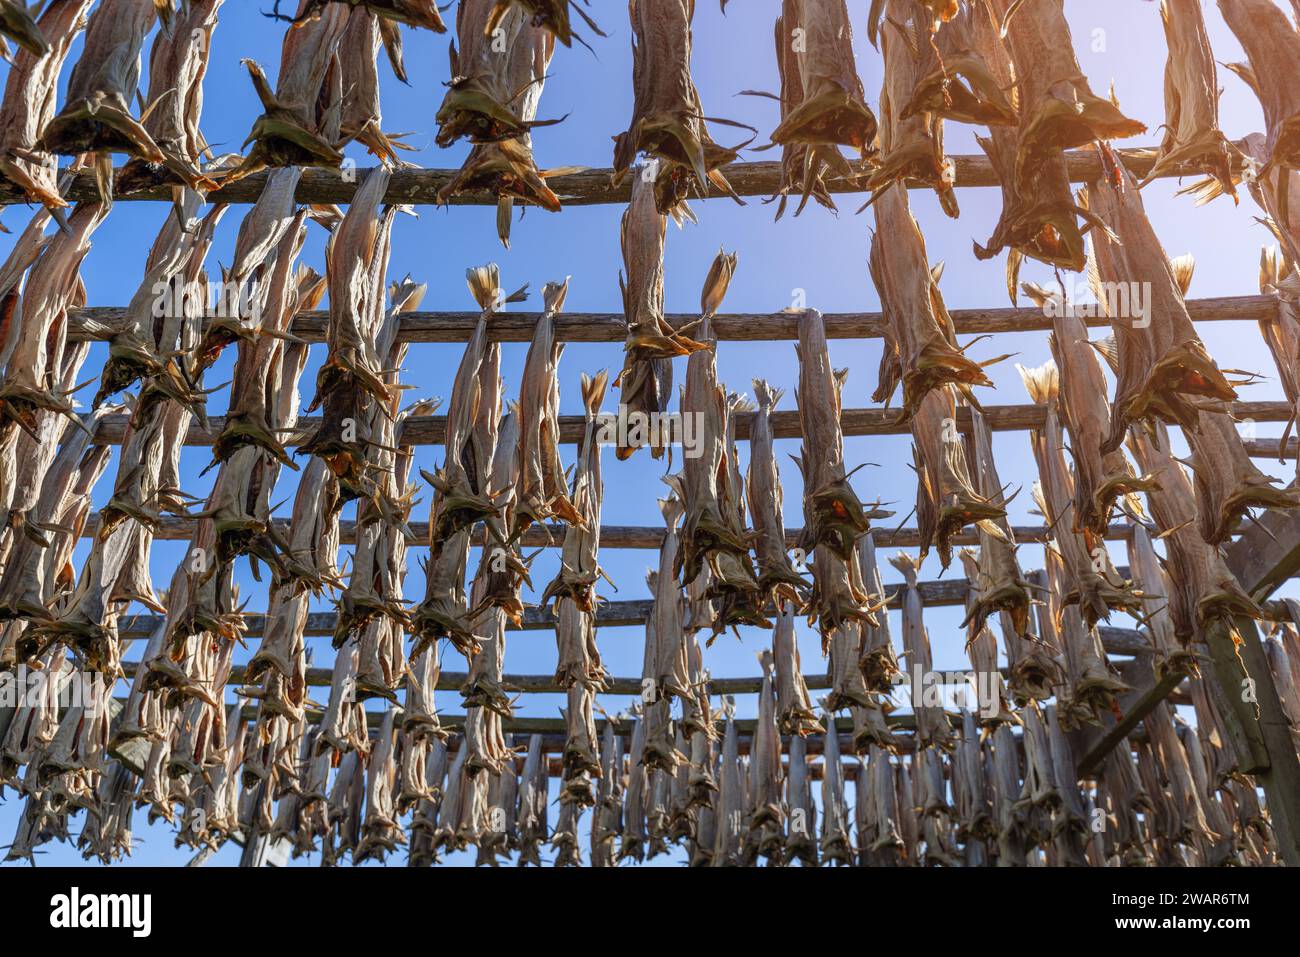 In der klaren, klaren Luft von Lofoten, Norwegen, sehen Sie Fische, die an einem Holzgestell zum Trocknen hängen, eine uralte Methode, die das Wesen der traditionellen Tradition einfängt Stockfoto